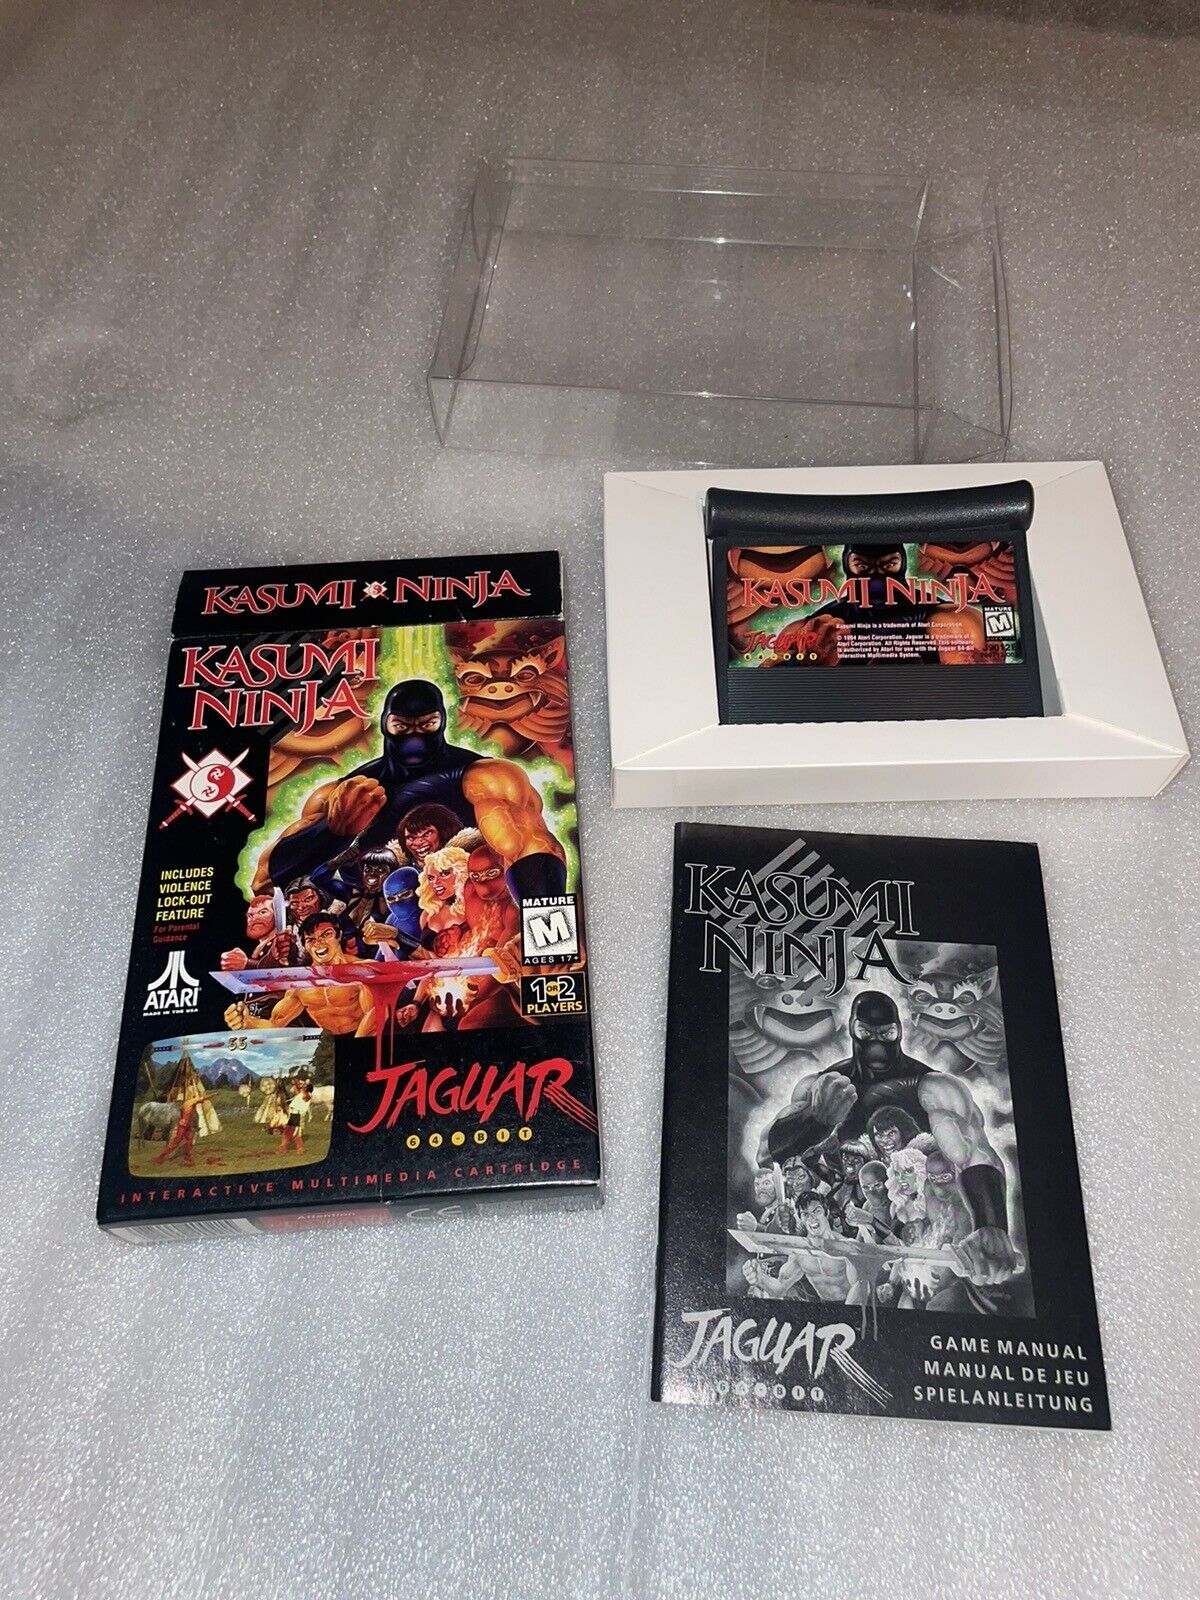 Kasumi Ninja Atari Jaguar Complete in box CIB---- 10X better than Mortal Kombat!